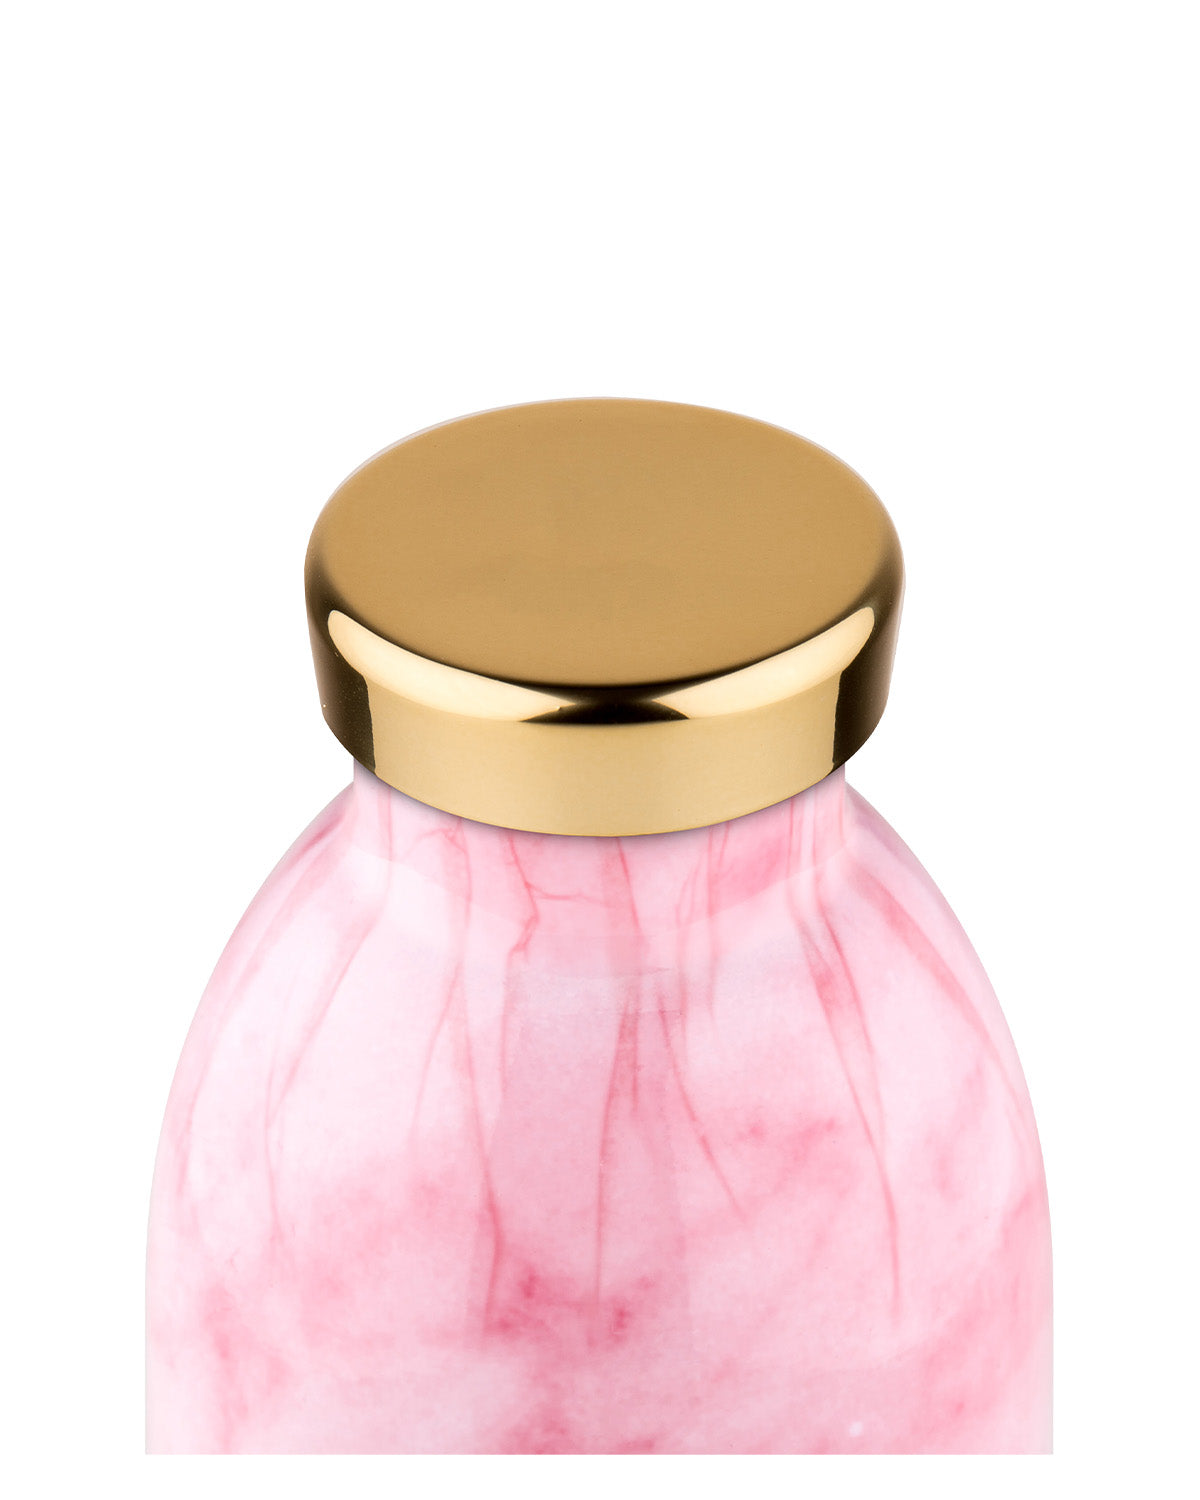 Acquista Online Marble Pink - 330 ml In Saldo